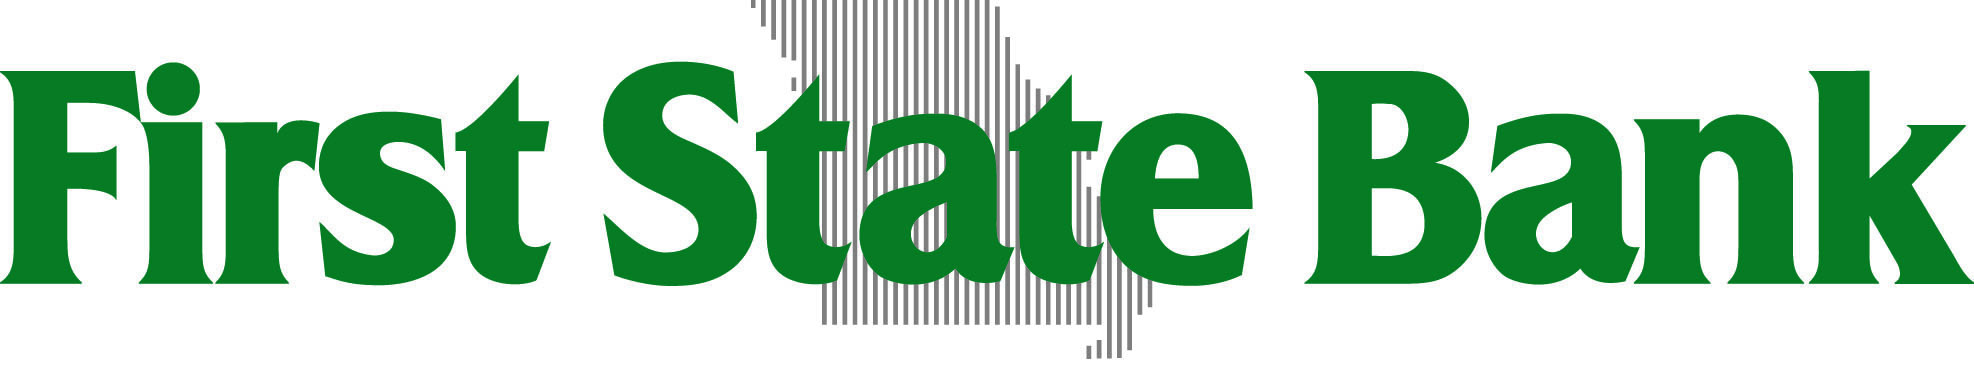 First State Bank logo.jpg